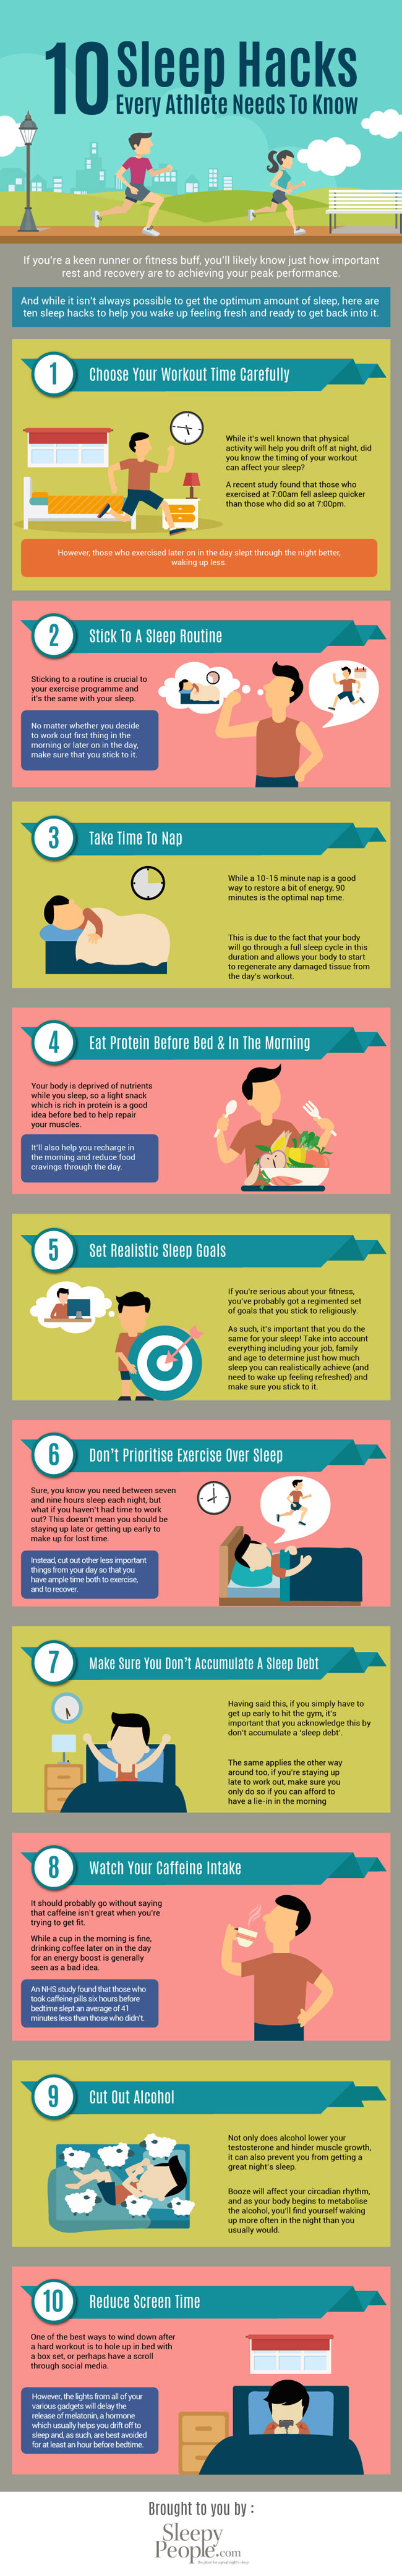 10-sleep-hacks-for-athletes